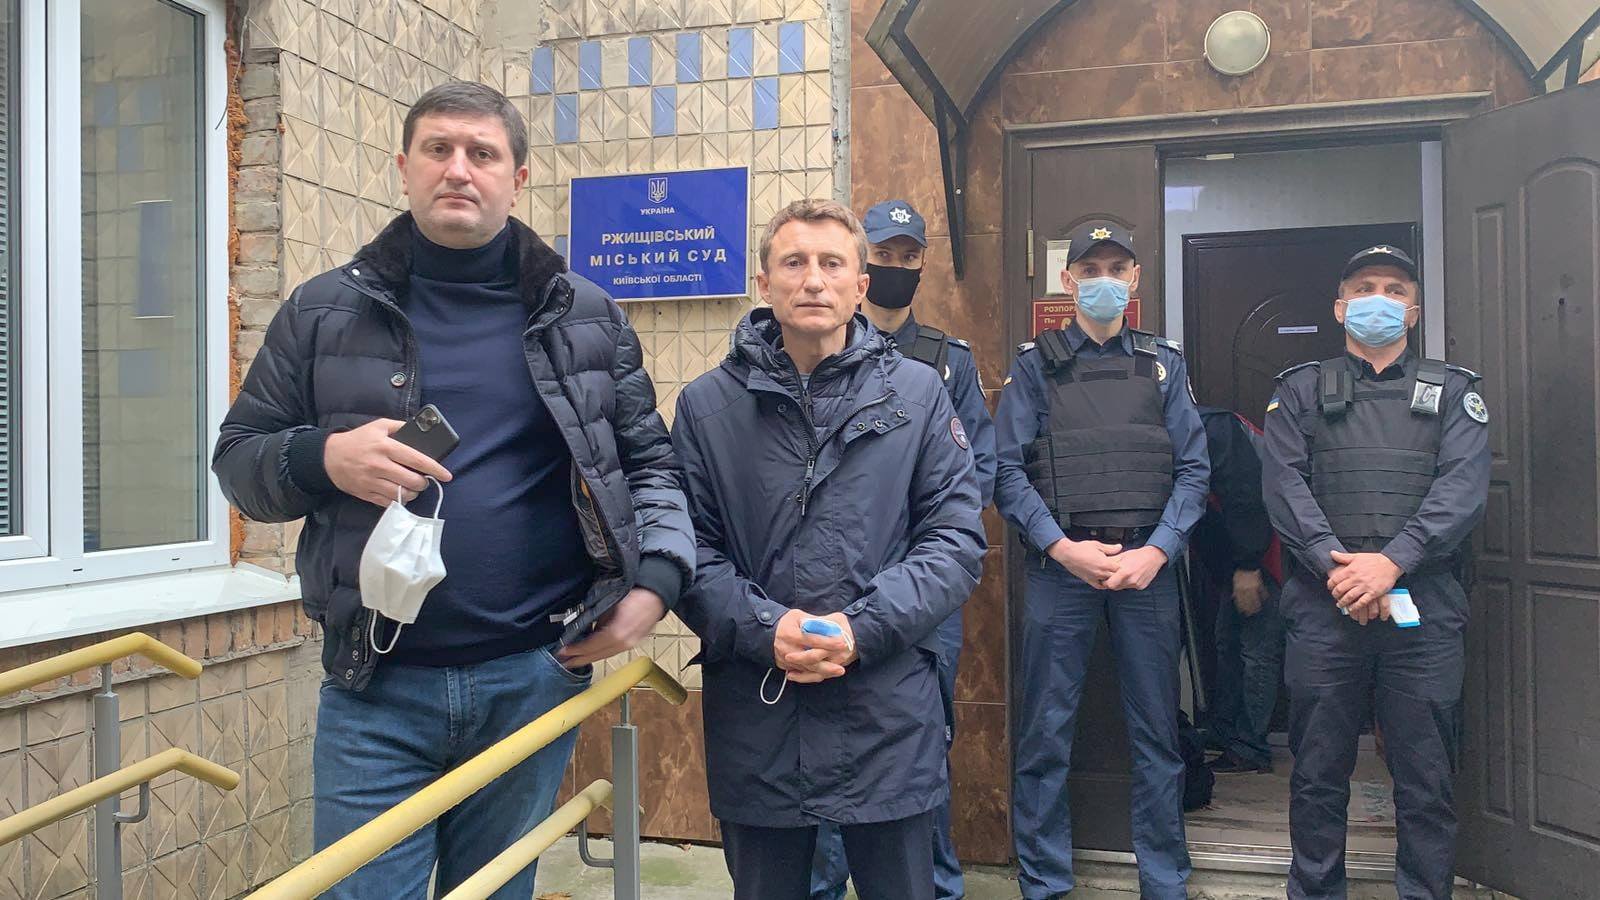 Наша мета – захистити волевиявлення жителів Ржищева та суд від тиску, - депутат КОР Руслан Кузьменко